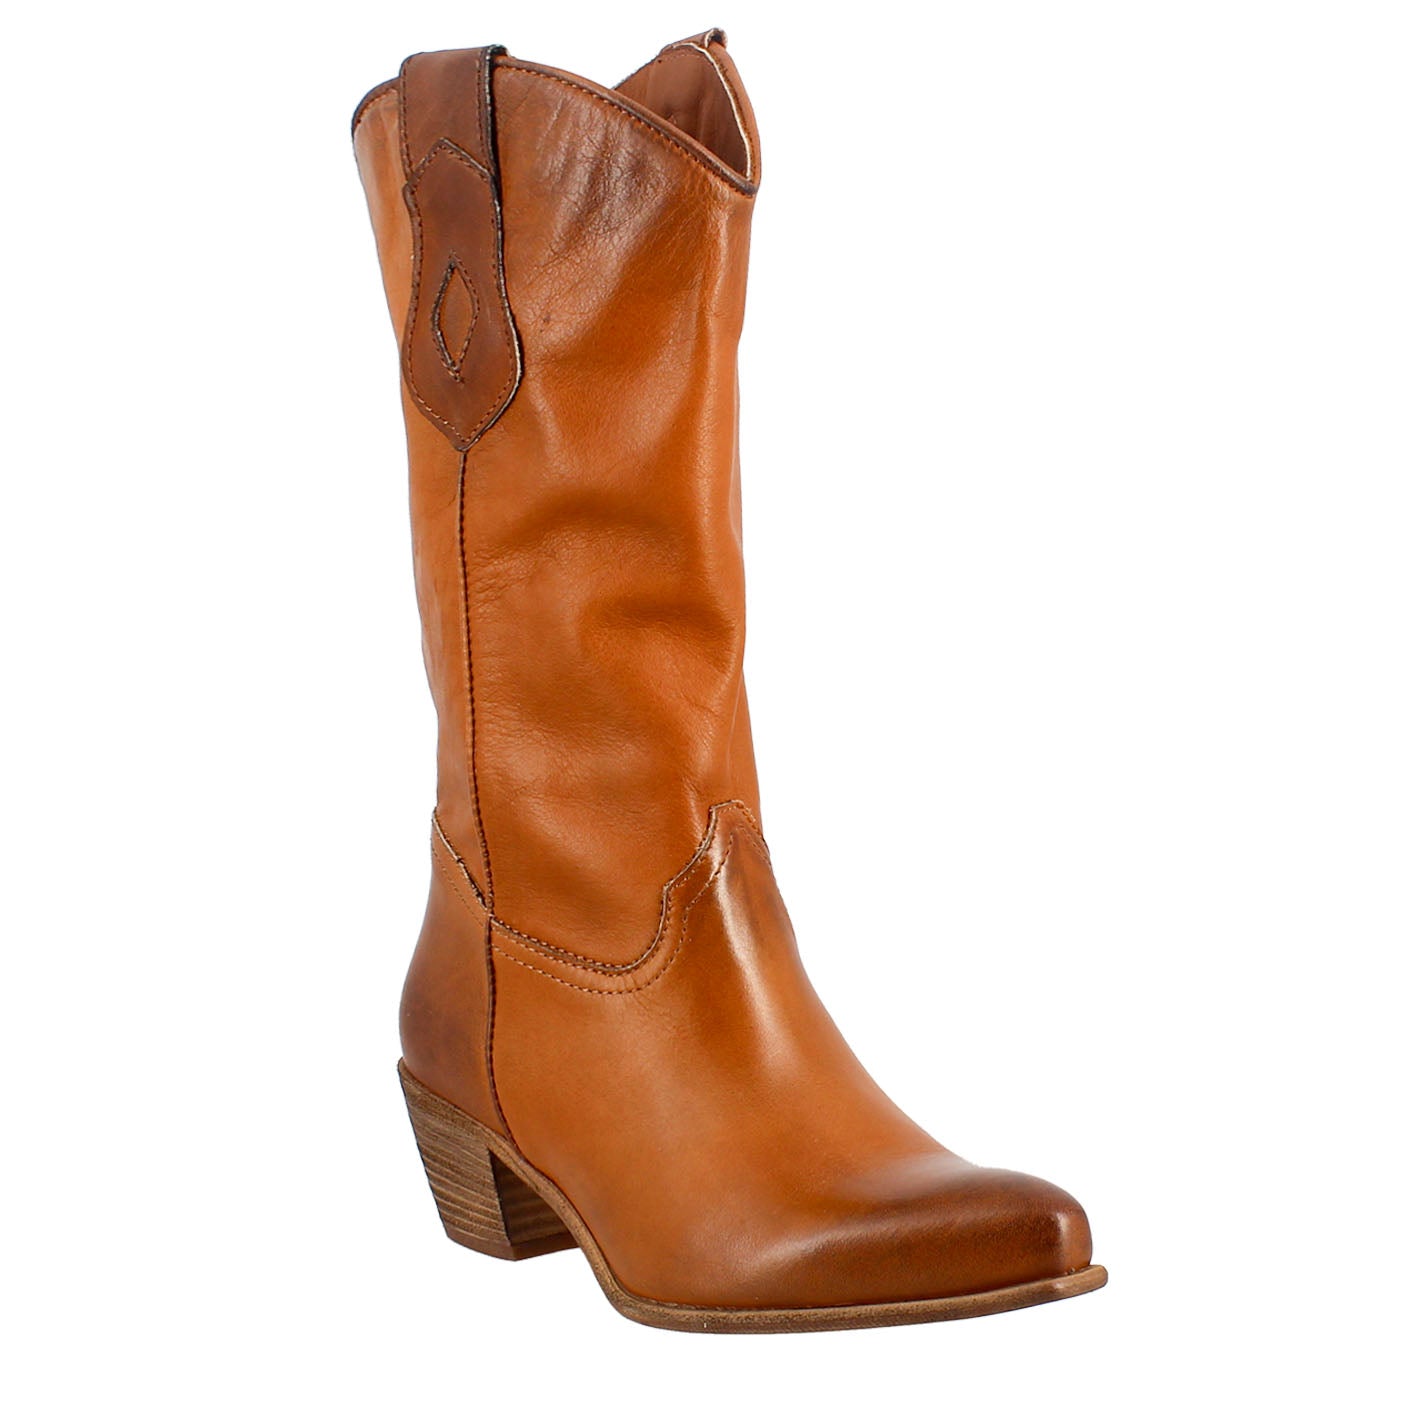 Bottes texanes pour femme non doublées en cuir vintage marron.